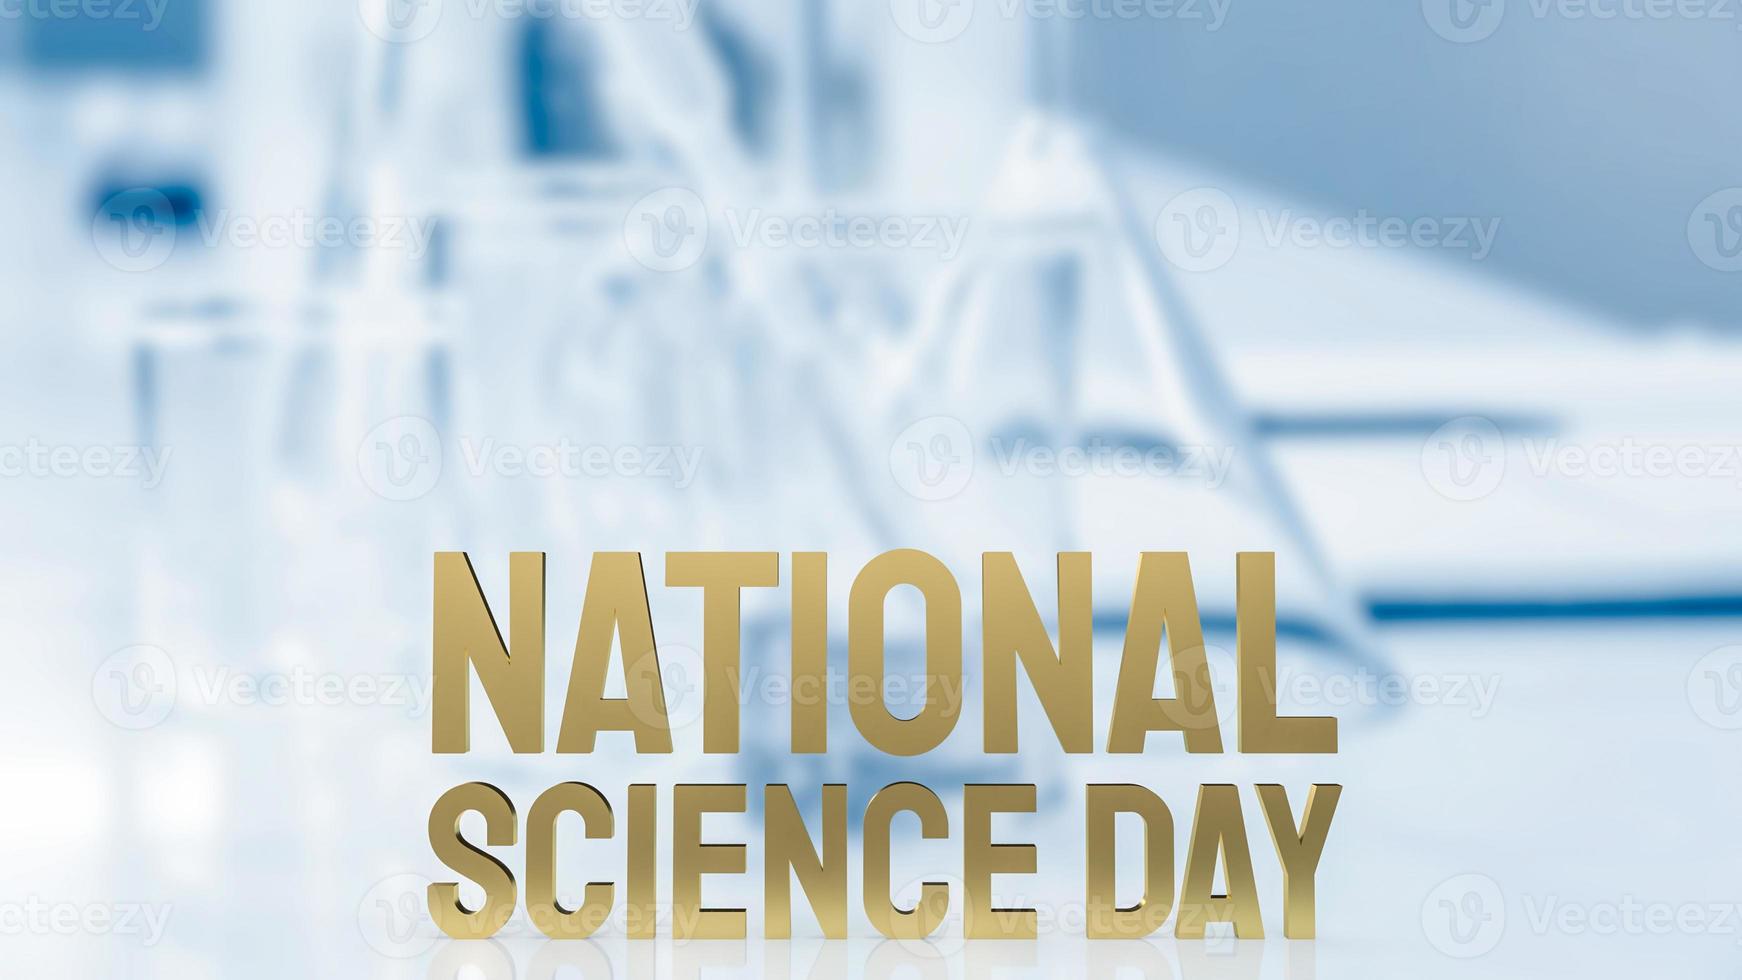 den nationella vetenskapsdagen guldtext på labbbakgrund för sci-koncept 3d-rendering foto